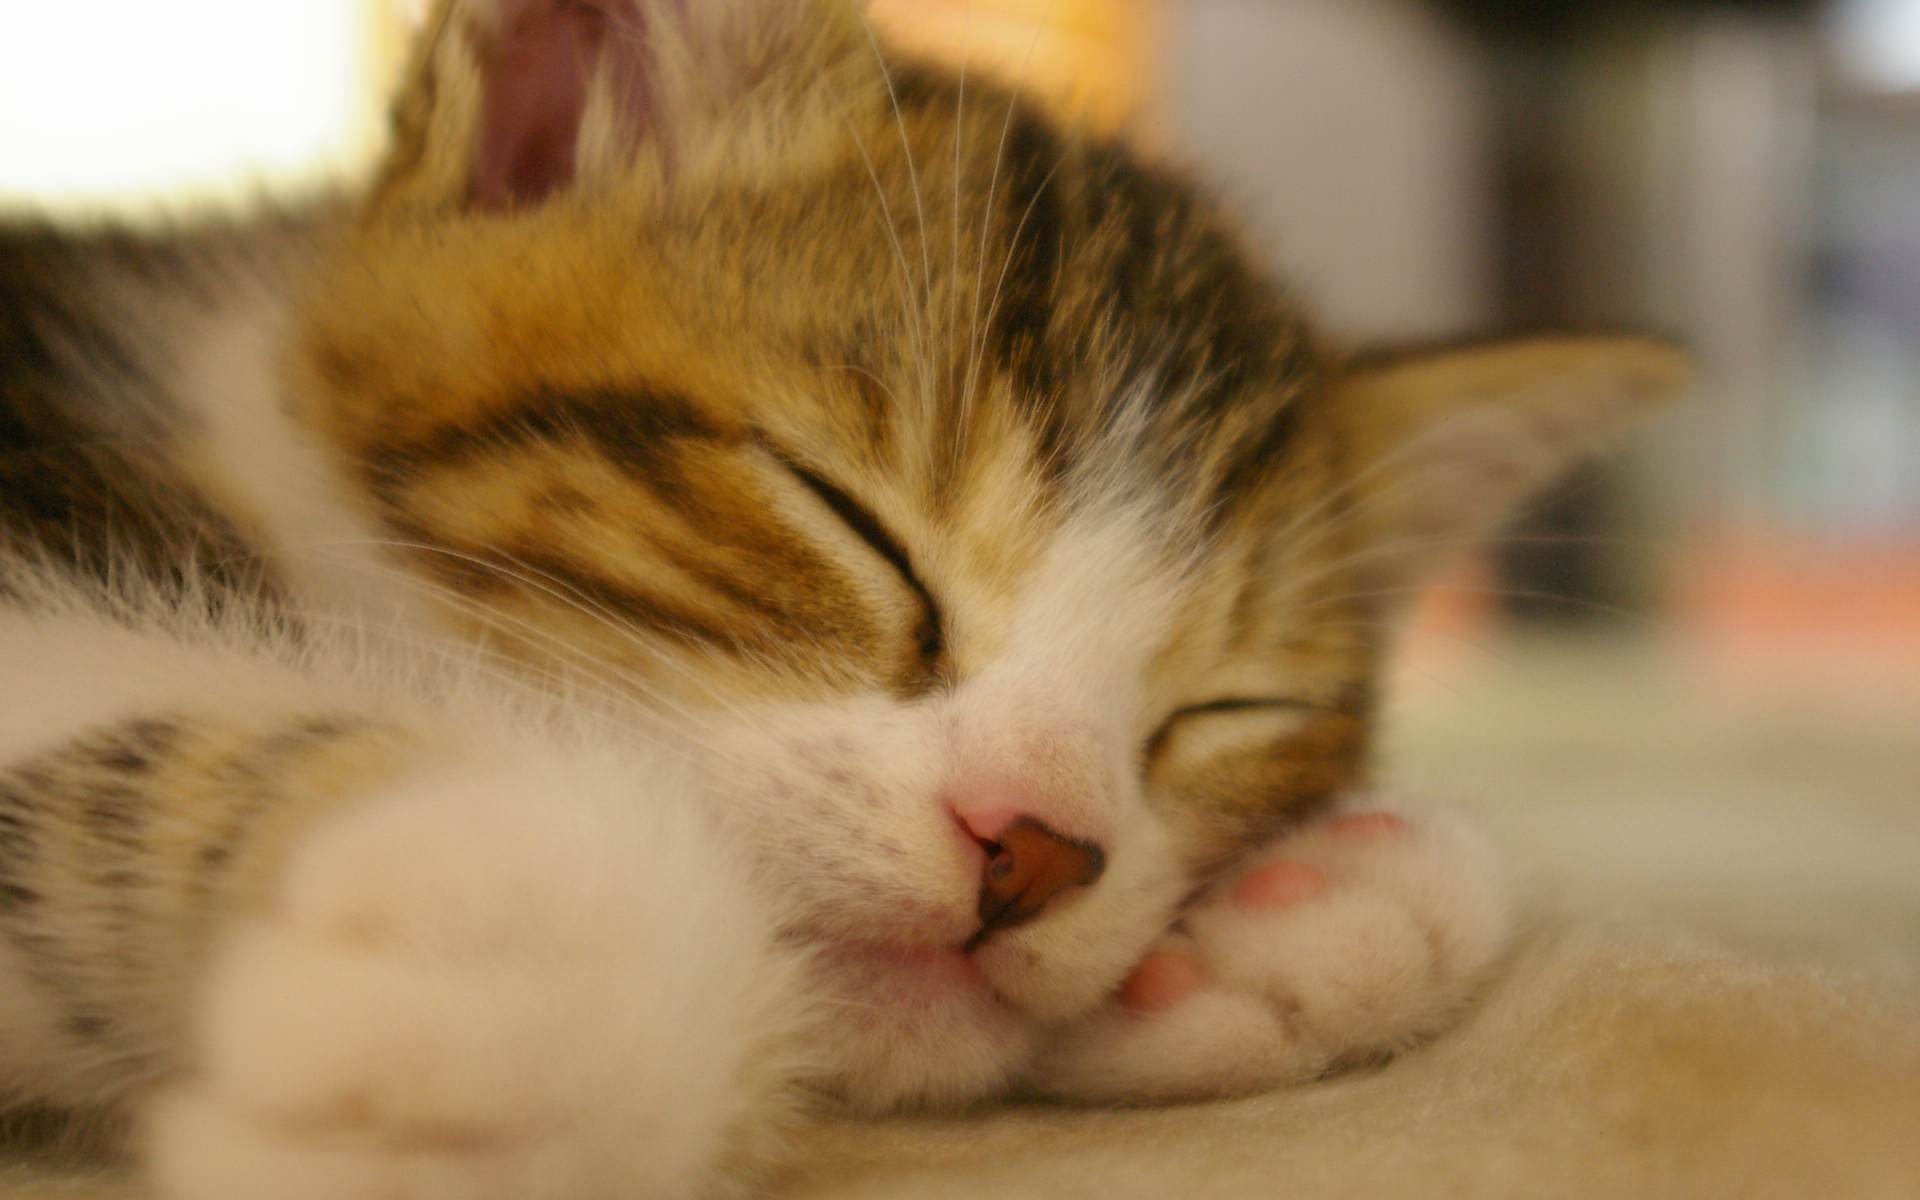 すやすや眠っている猫の可愛い壁紙 : 可愛い猫の壁紙画像集 - NAVER まとめ